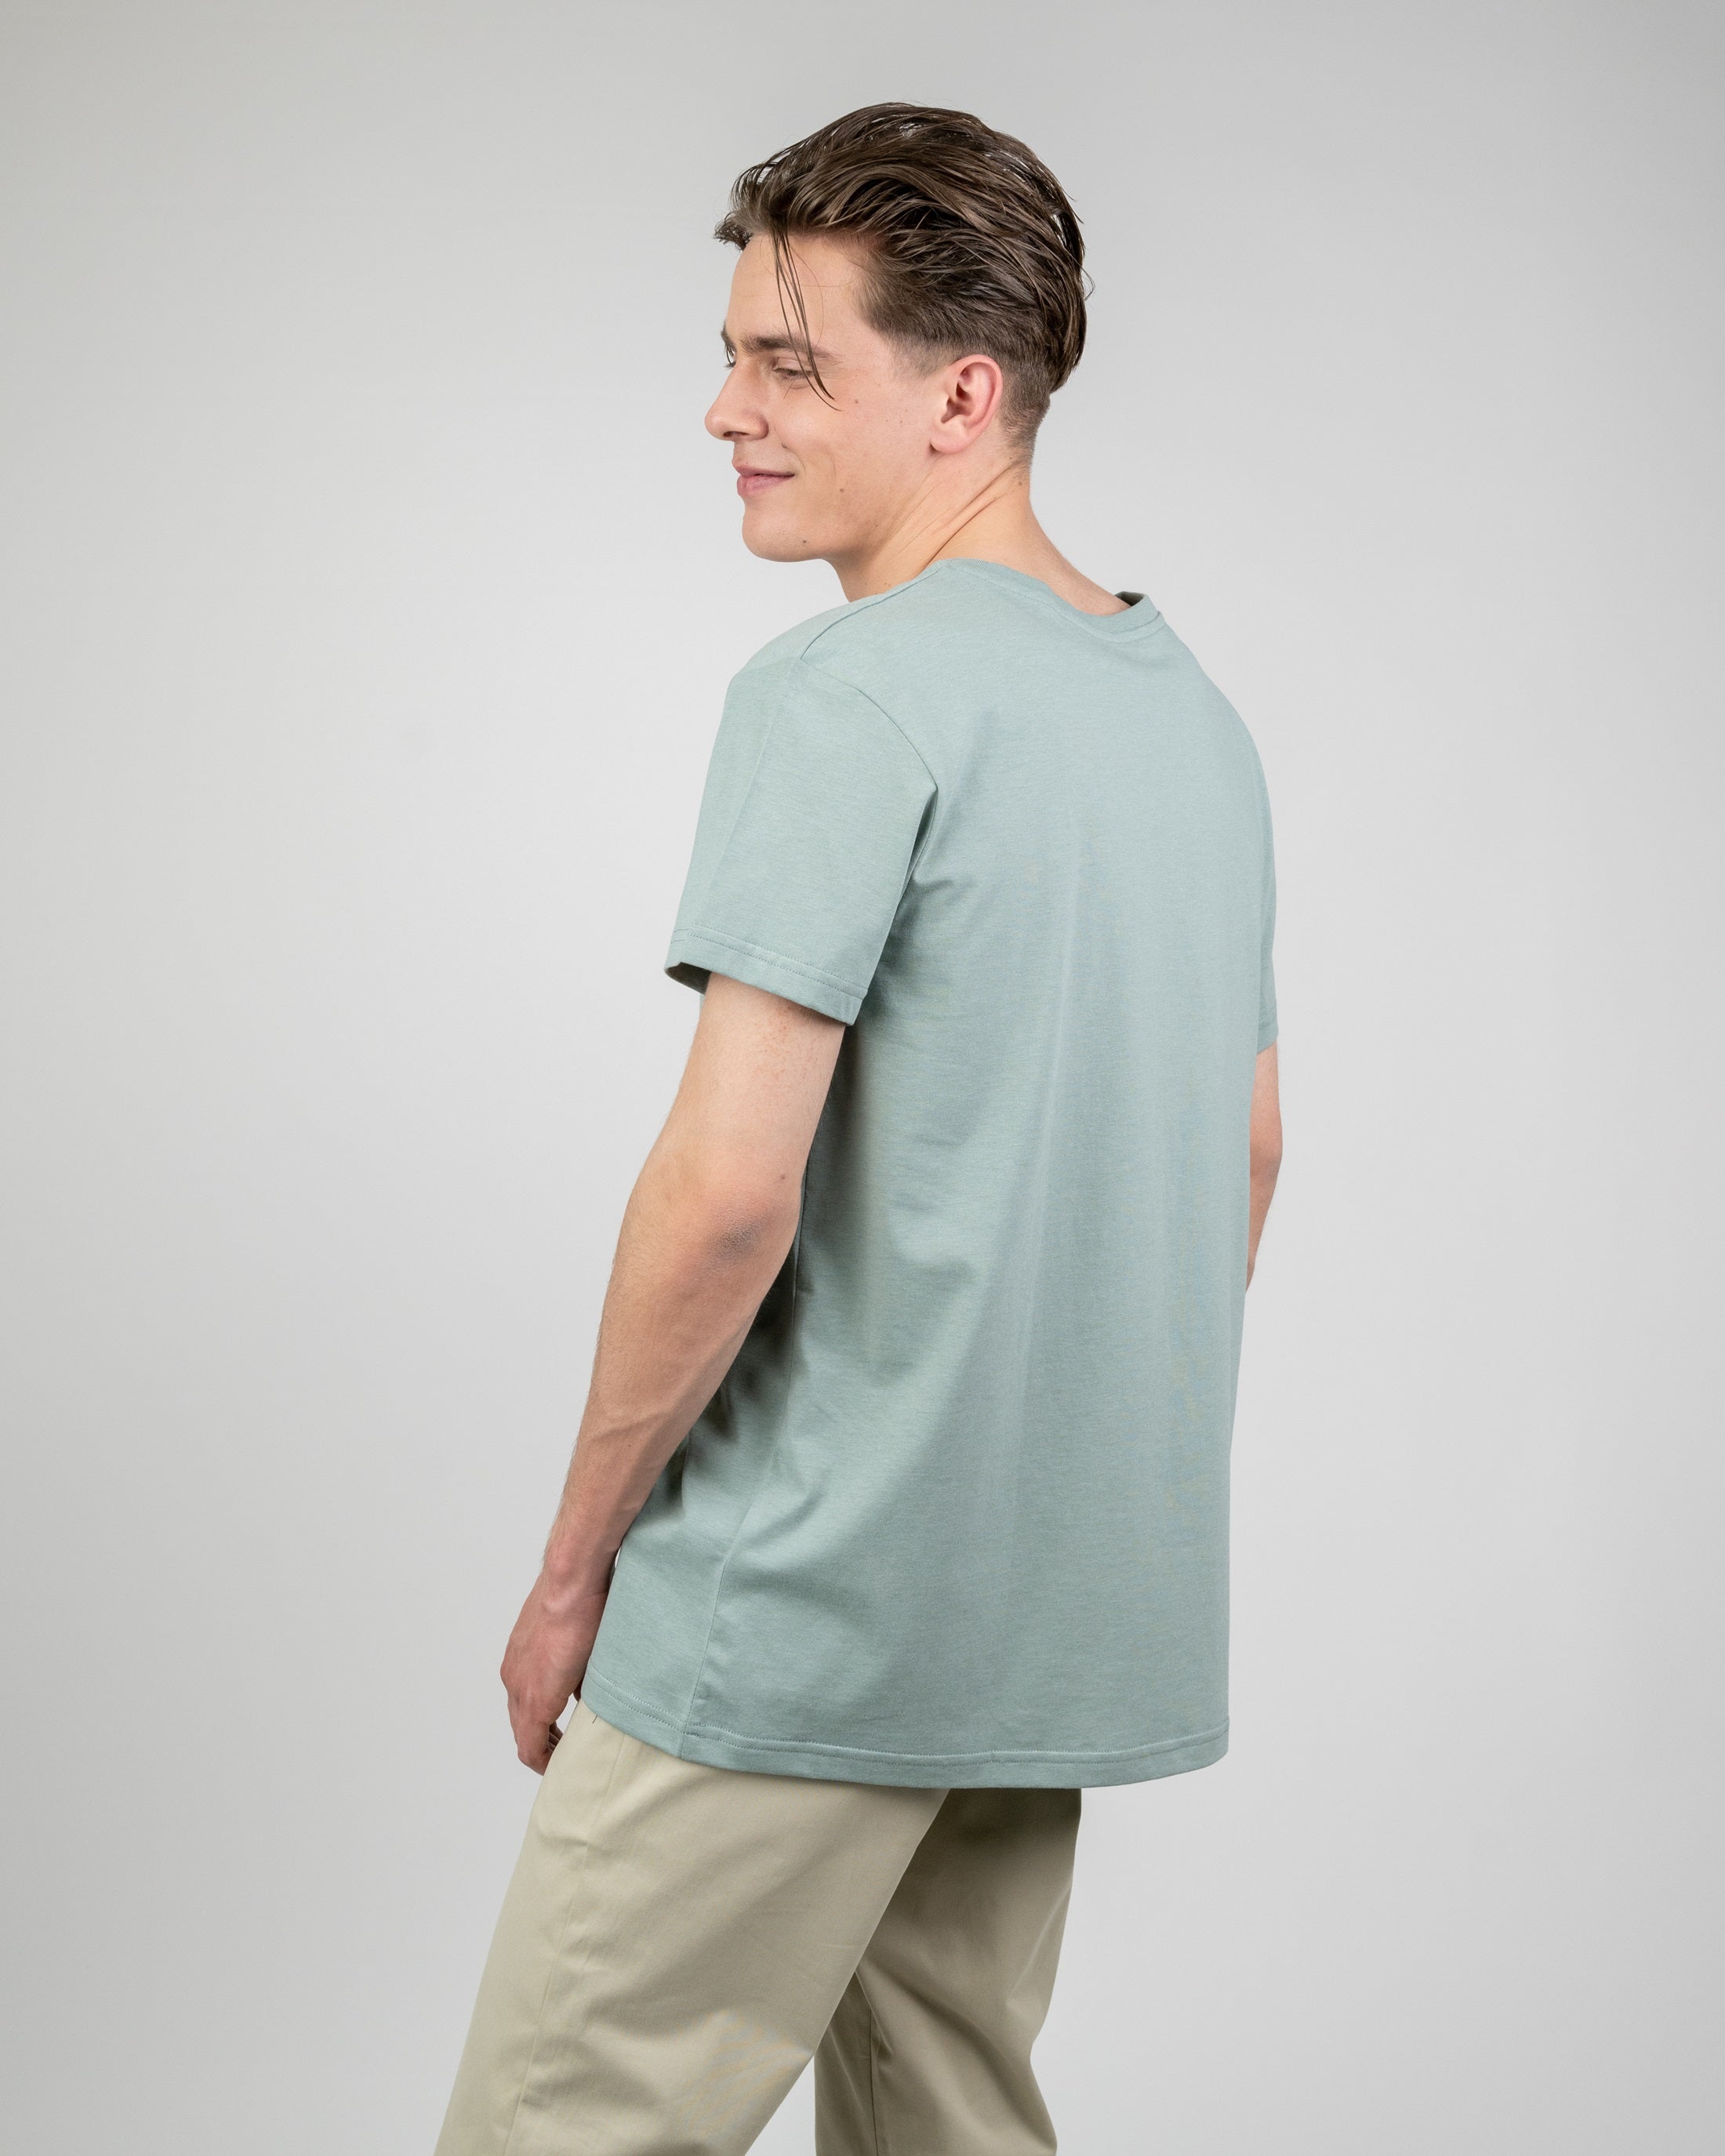 Herren T-Shirt aus Bio-Baumwolle Treeshirt Turquoise